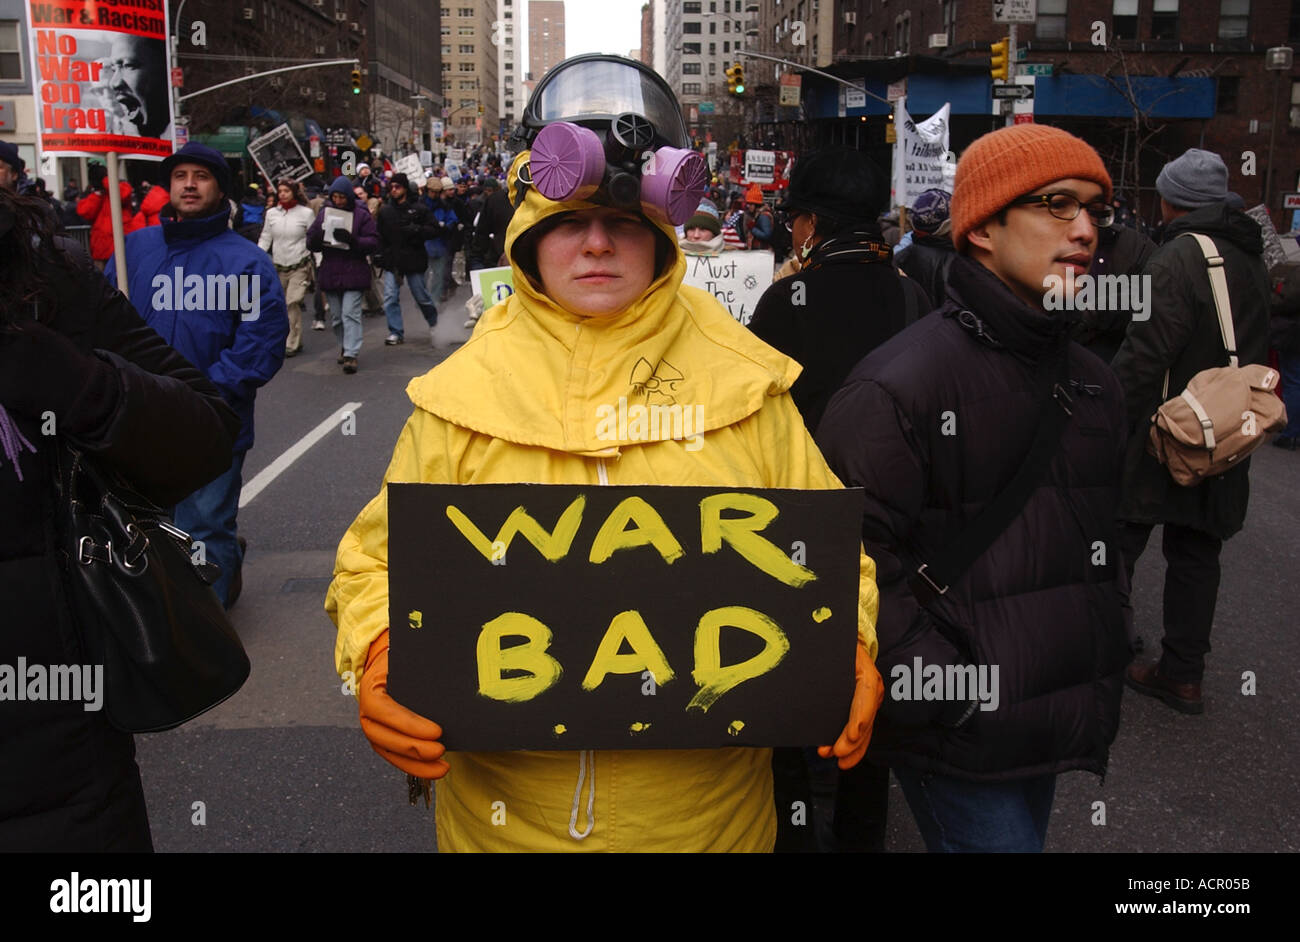 Signe manifestant mauvaise pendant la guerre Guerre NYC protester pour protester contre la guerre en Iraq et aux États-Unis dans la ville de New York de protestation massive Banque D'Images